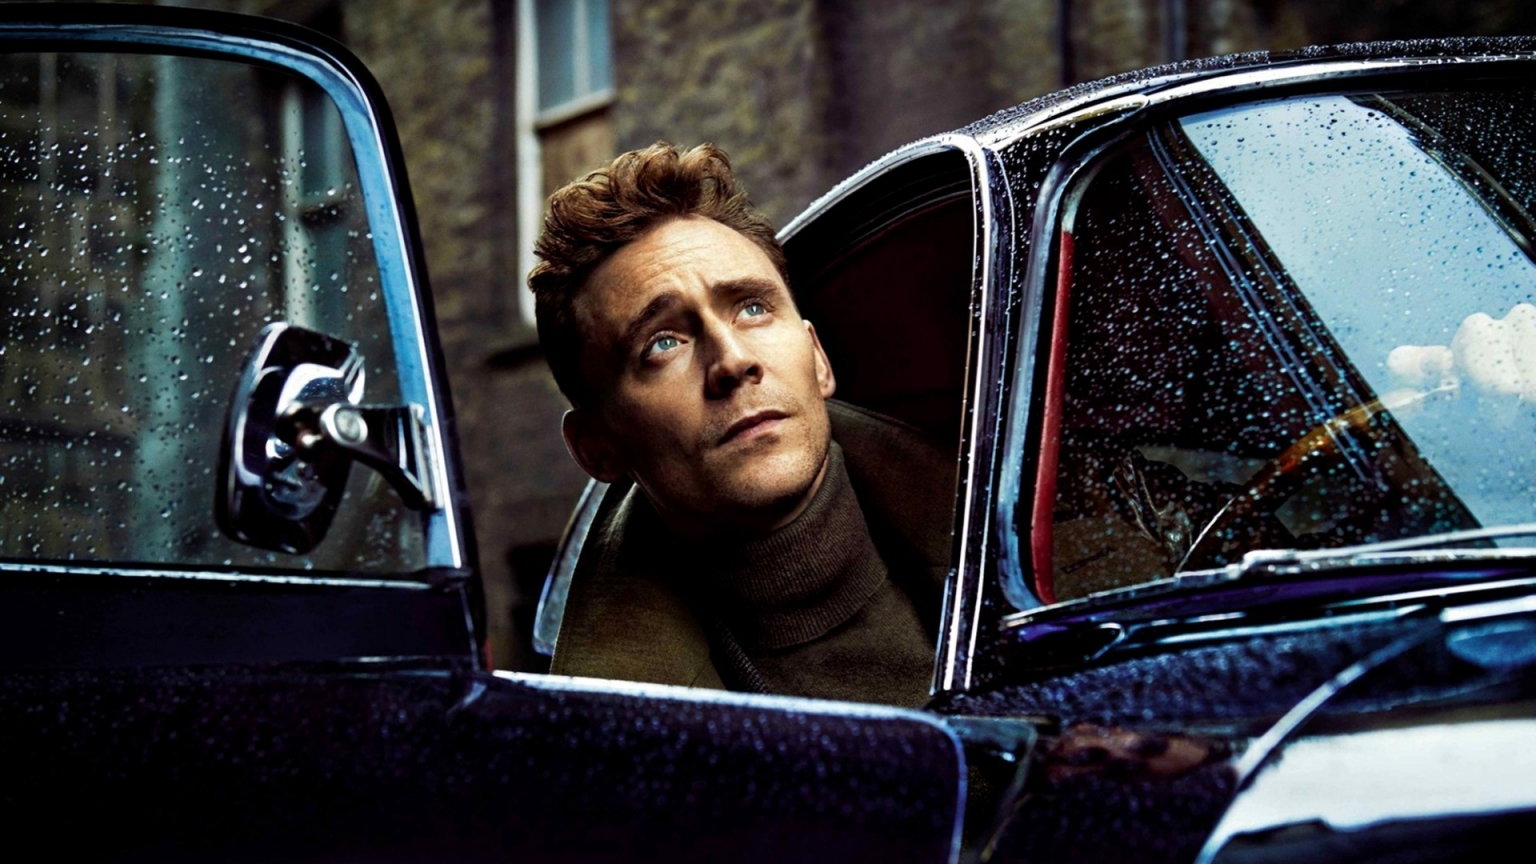 Tom Hiddleston Poster for 1536 x 864 HDTV resolution